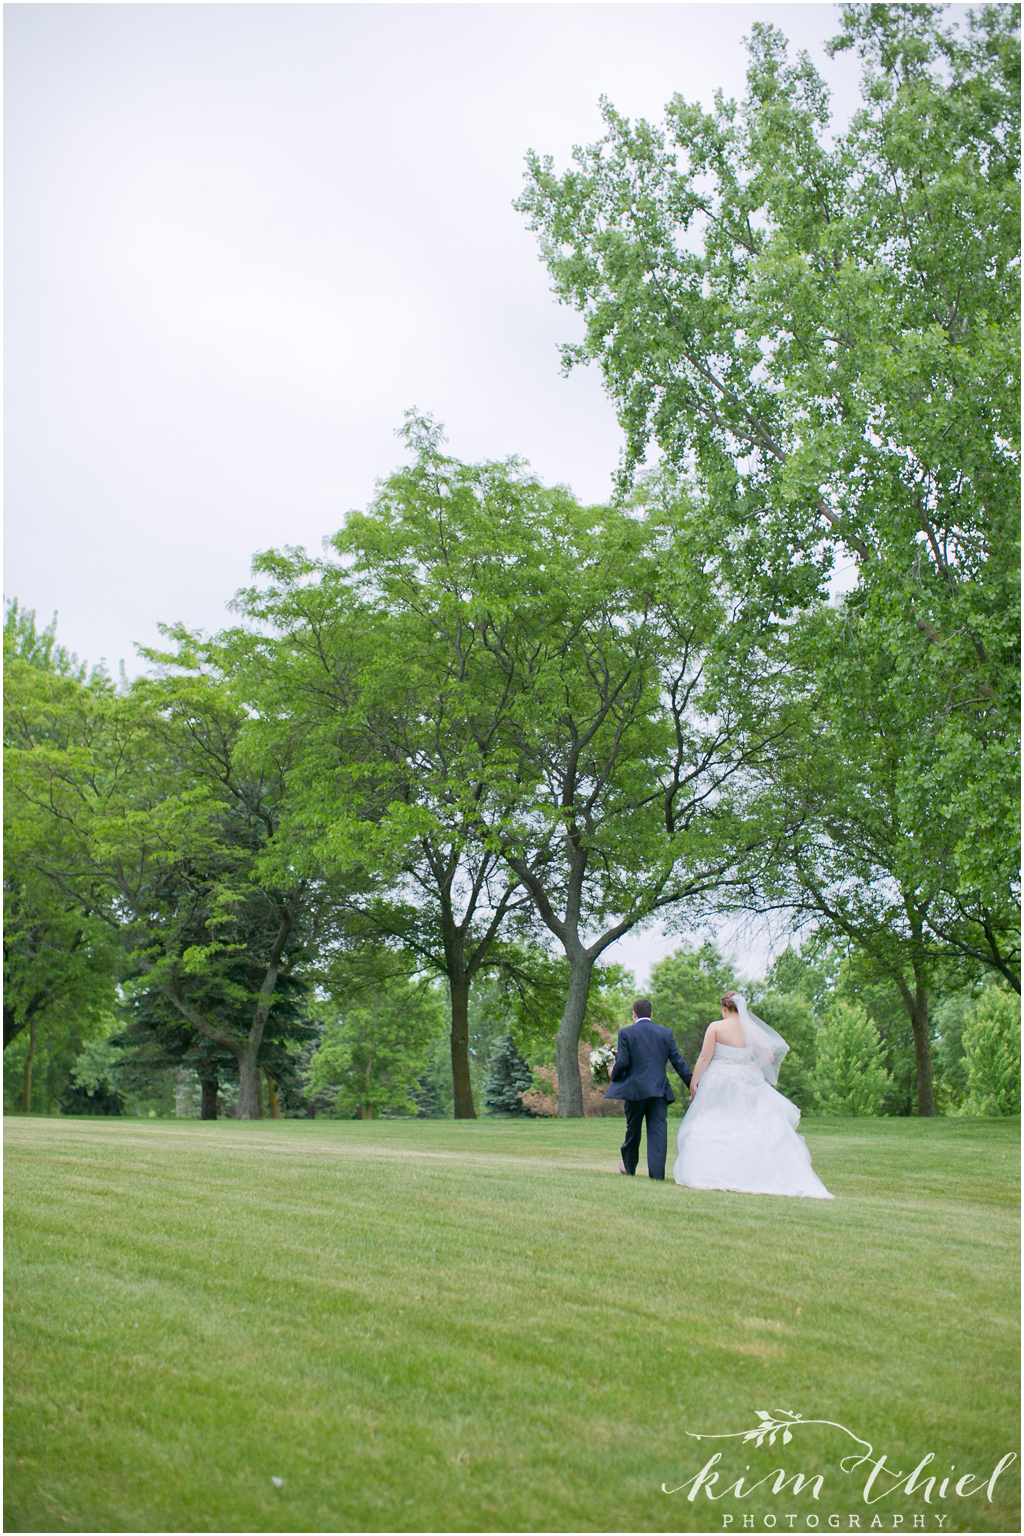 Kim-Thiel-Photography-Joyful-Wisconsin-Wedding-33